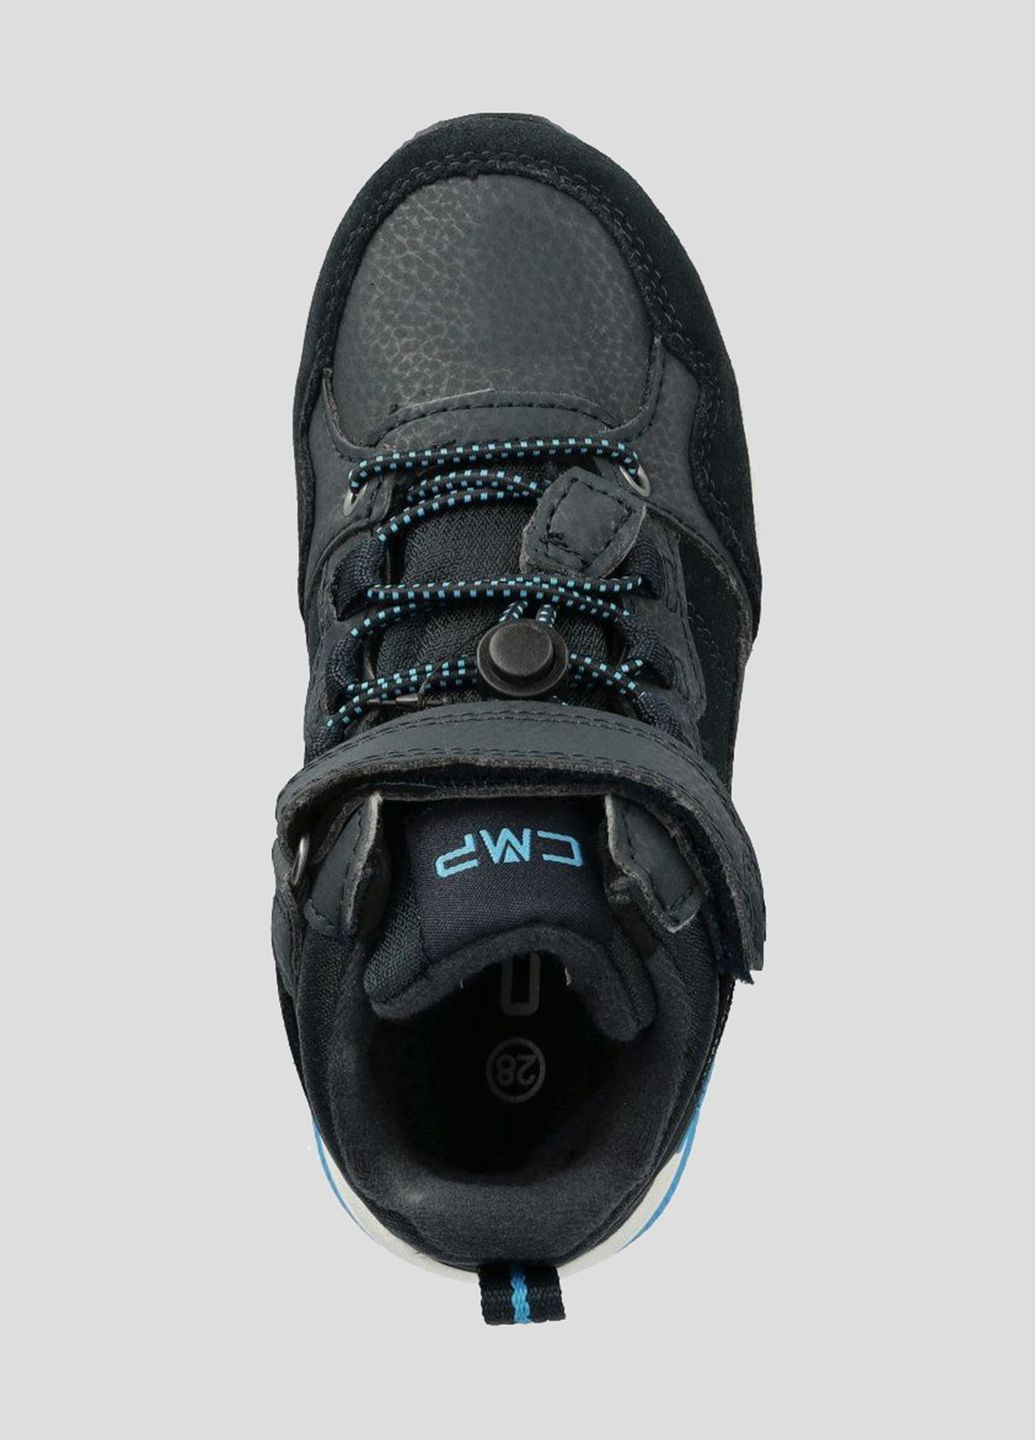 Темно-синие спортивные зимние темно-синие ботинки kids hadil leather wp urban sh CMP